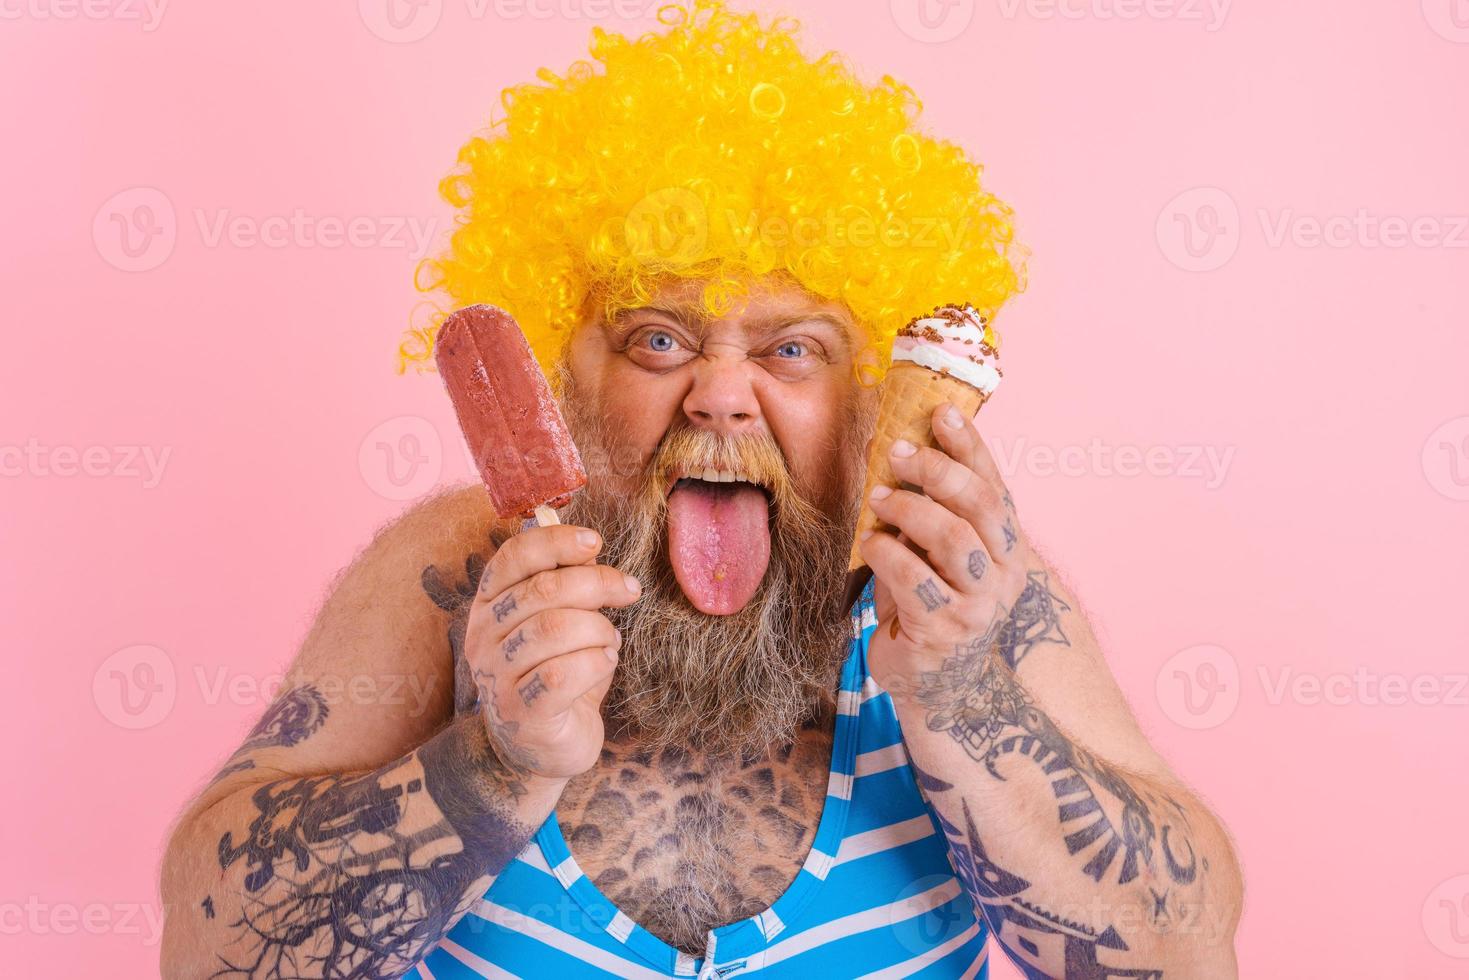 gordo homem com barba e peruca come uma picolé e a sorvete foto